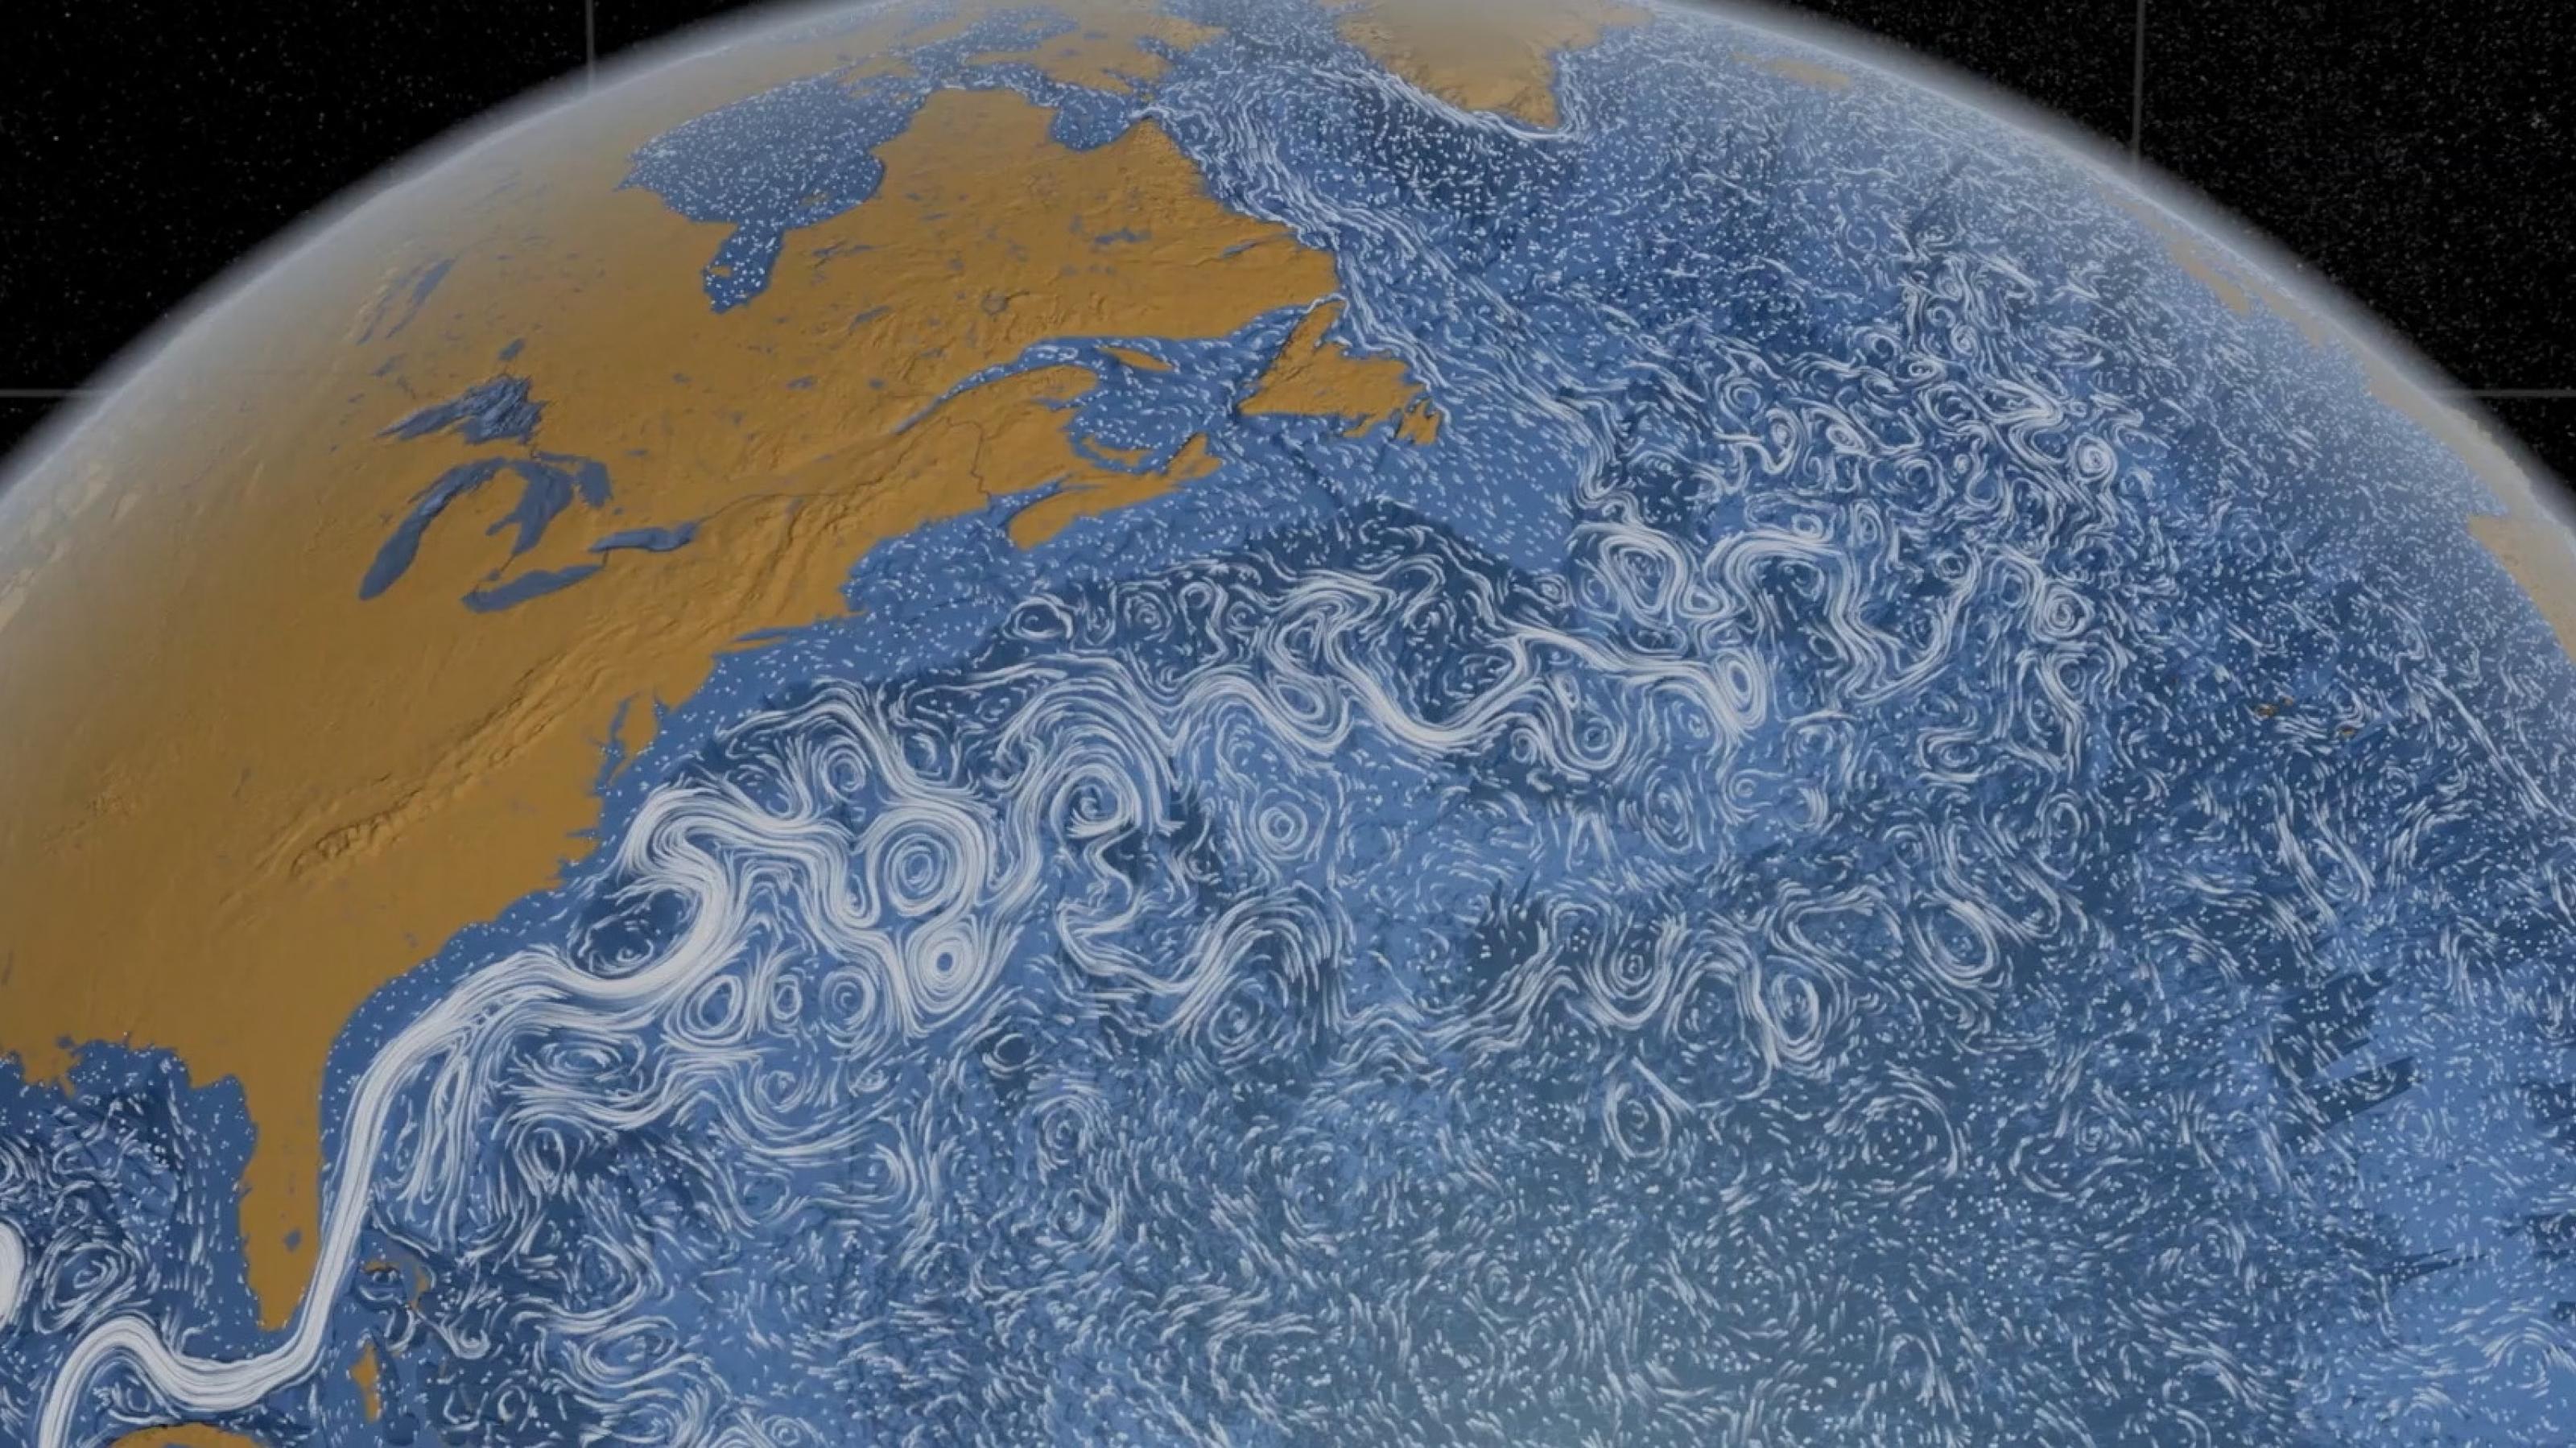 Darstellung der Erde auf der Meereströme eingezeichnet sind.